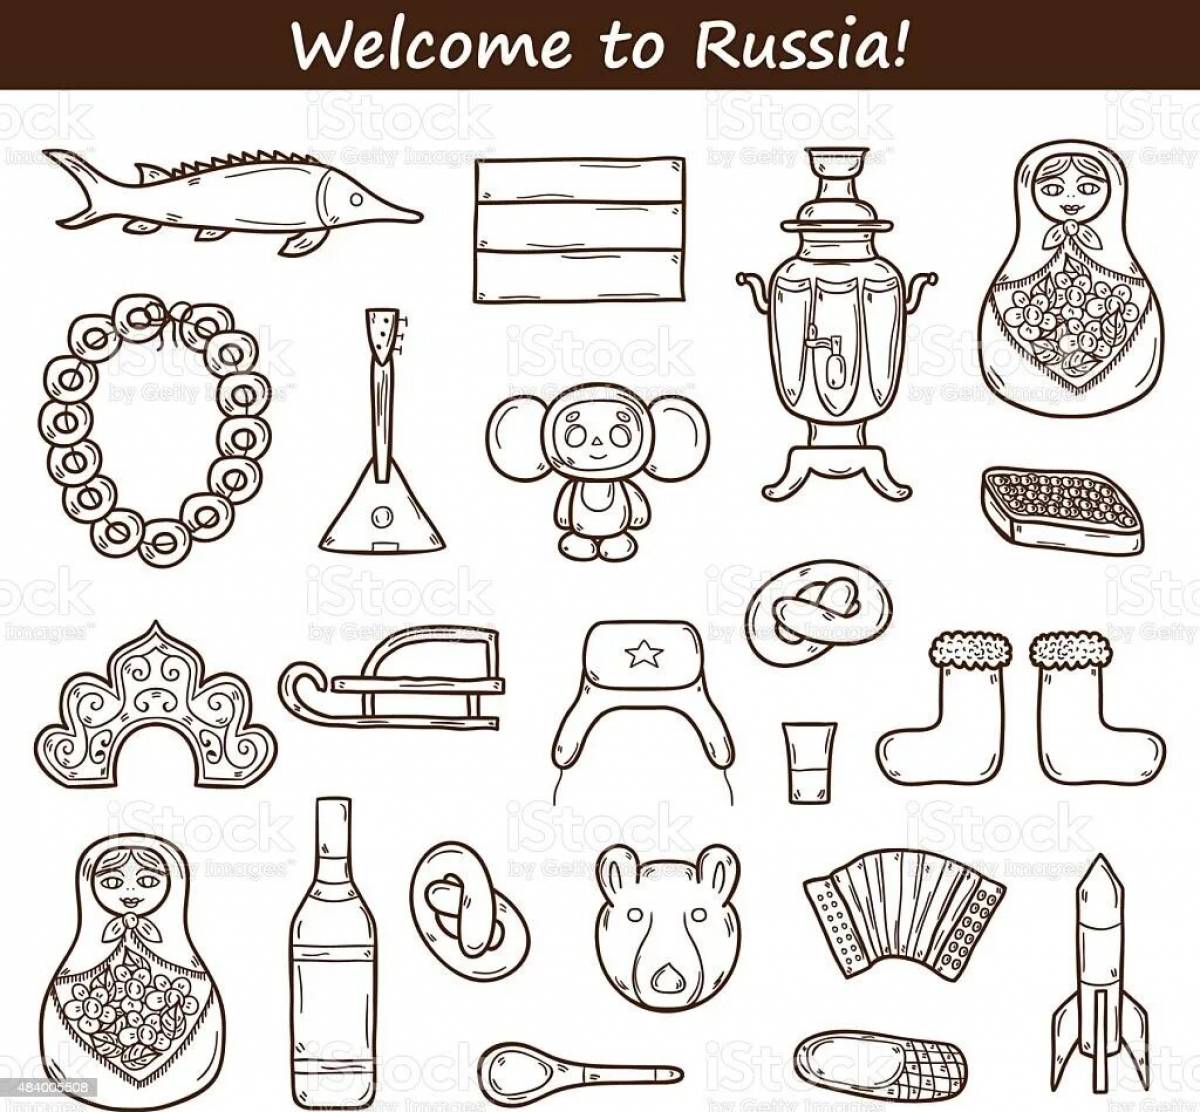 Символы россии для детей дошкольного возраста #21